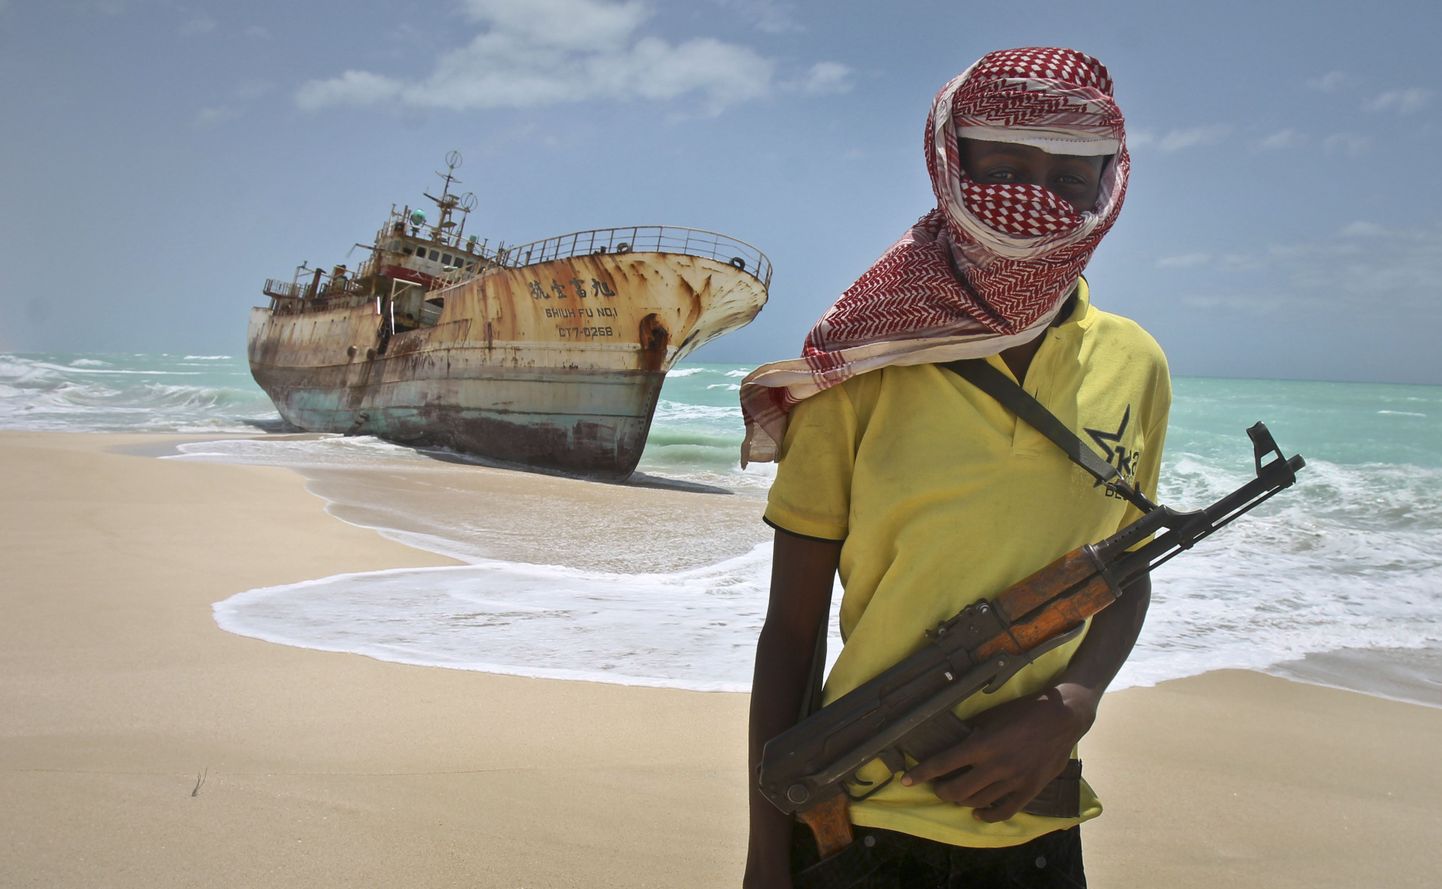 Так выглядит сомалийский пират. Его лучше рассматривать на картинке.